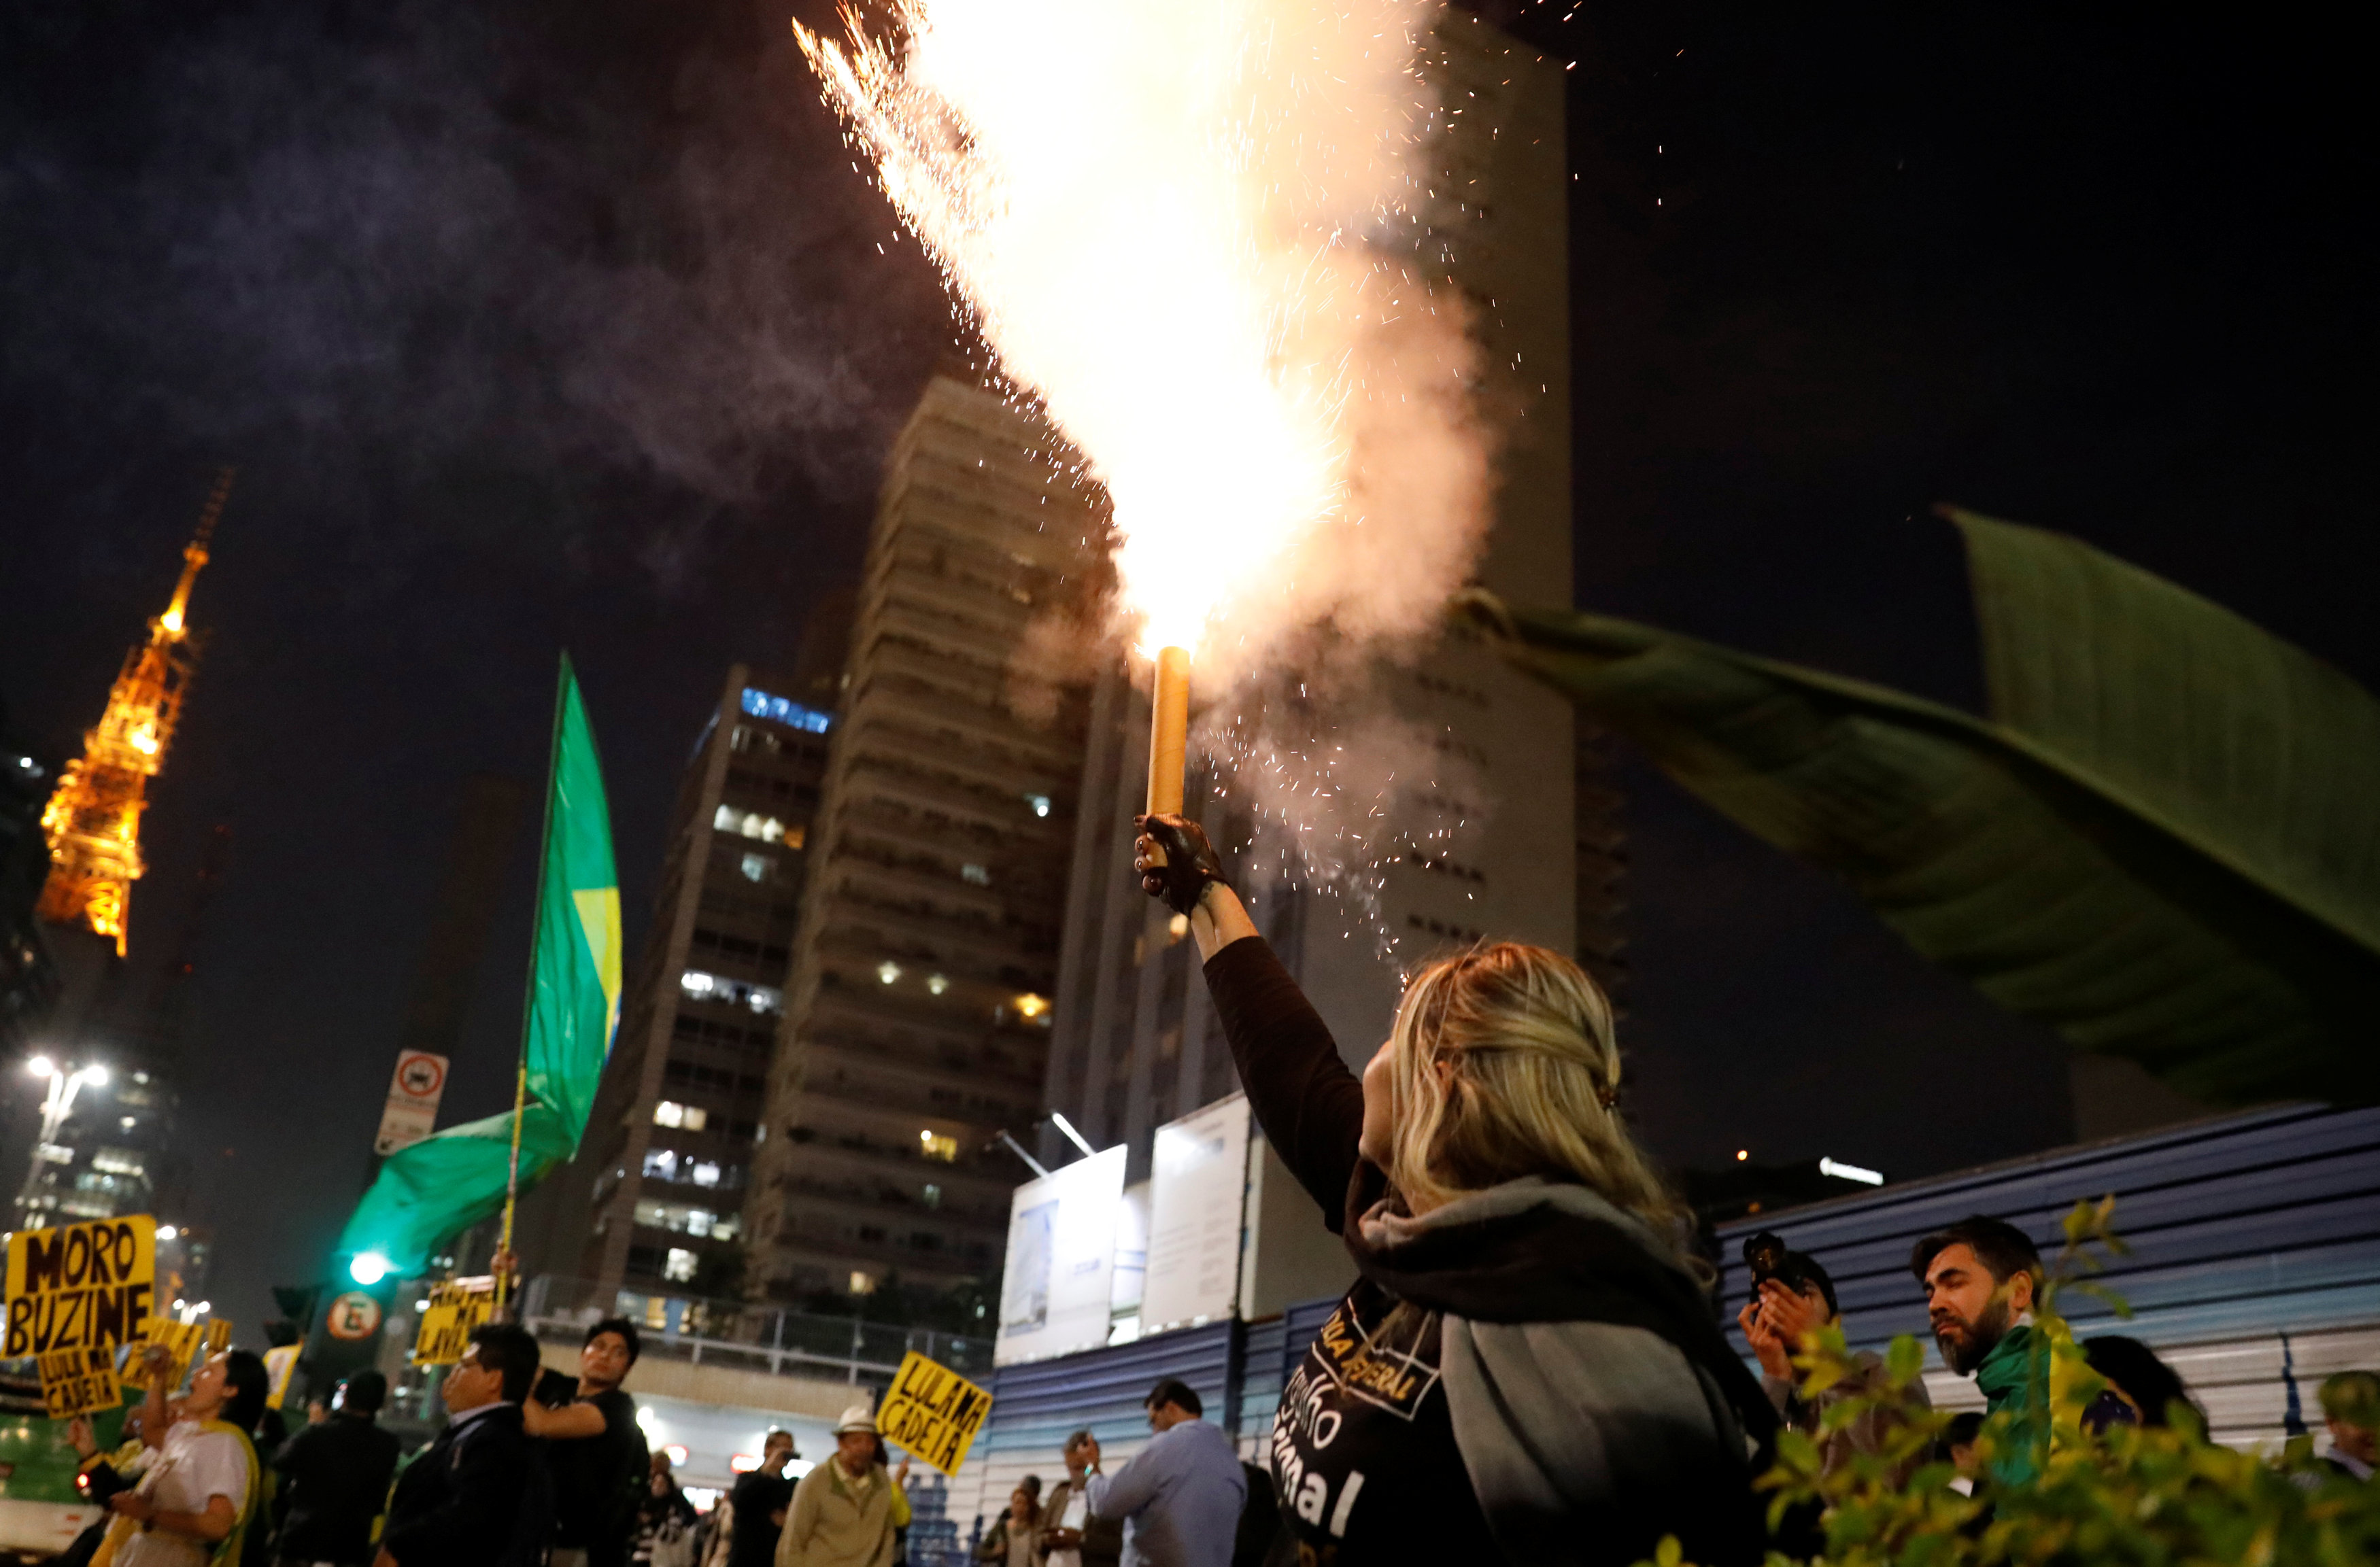 سيدة تطلق الالعاب النارية فى البرازيل احتفالا بالحكم بسجن الرئيس البرازيلى